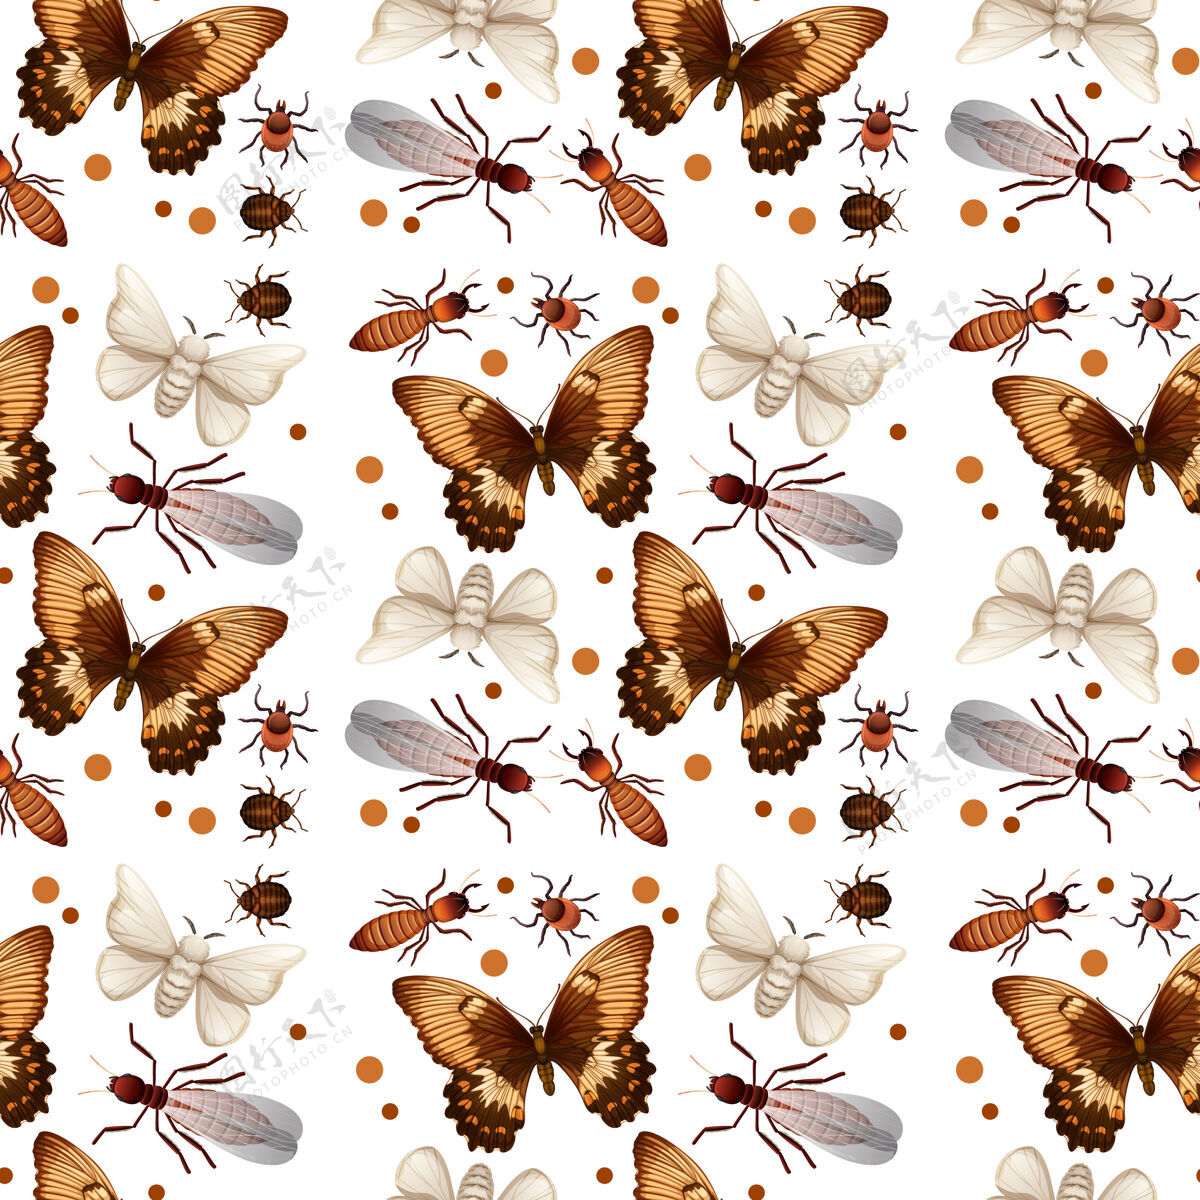 自然不同的昆虫图案爬行翅膀系列